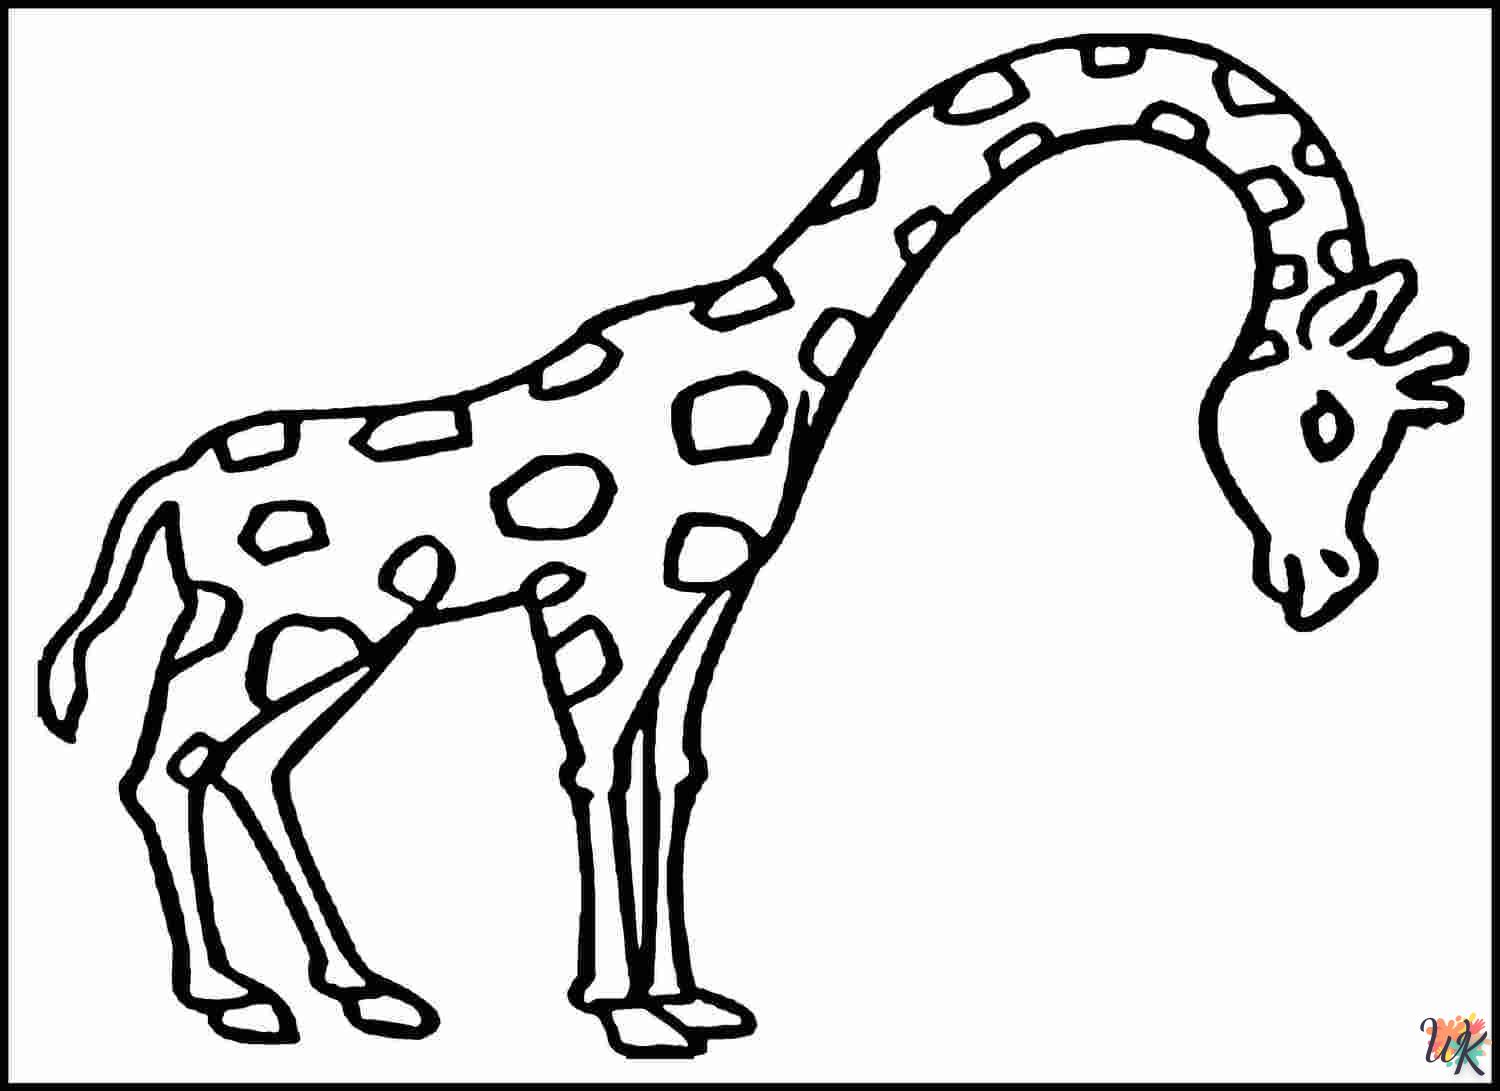 Giraffe kleurplaten13